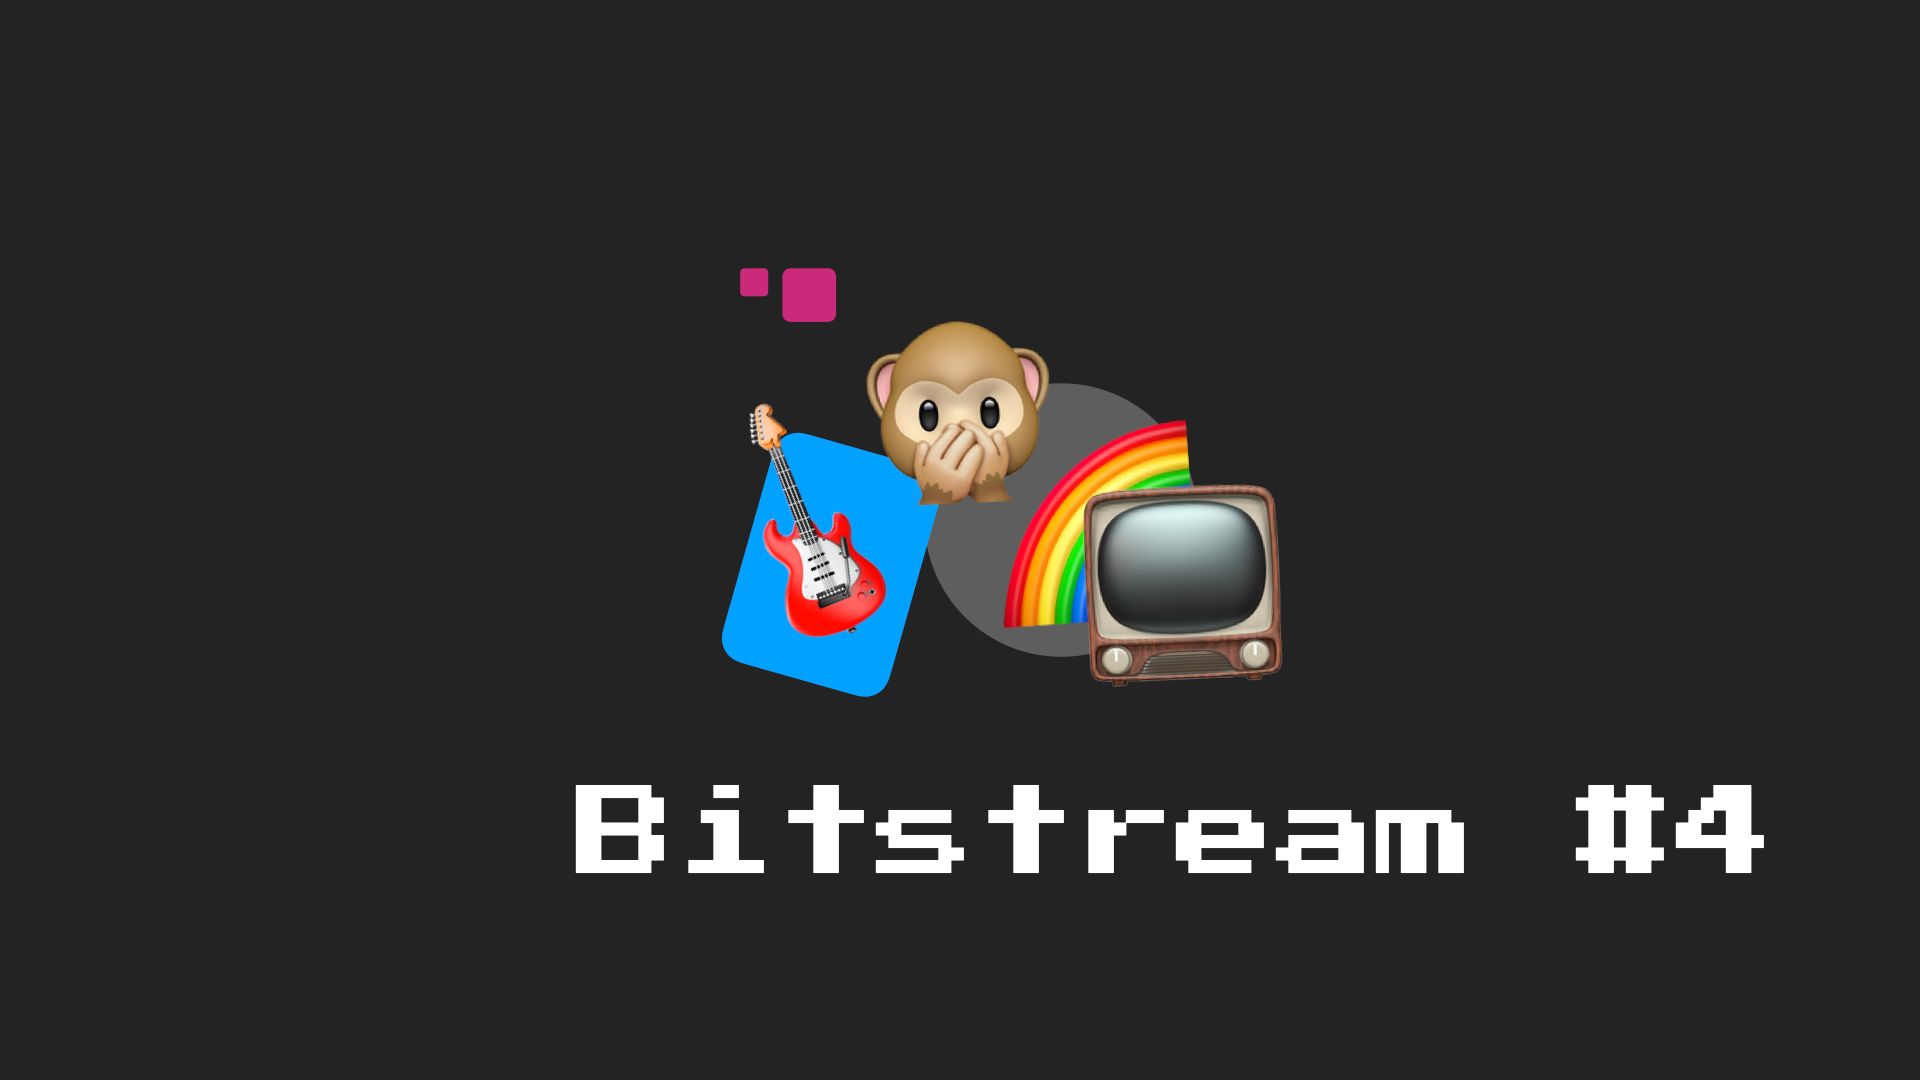 Bitstream #4